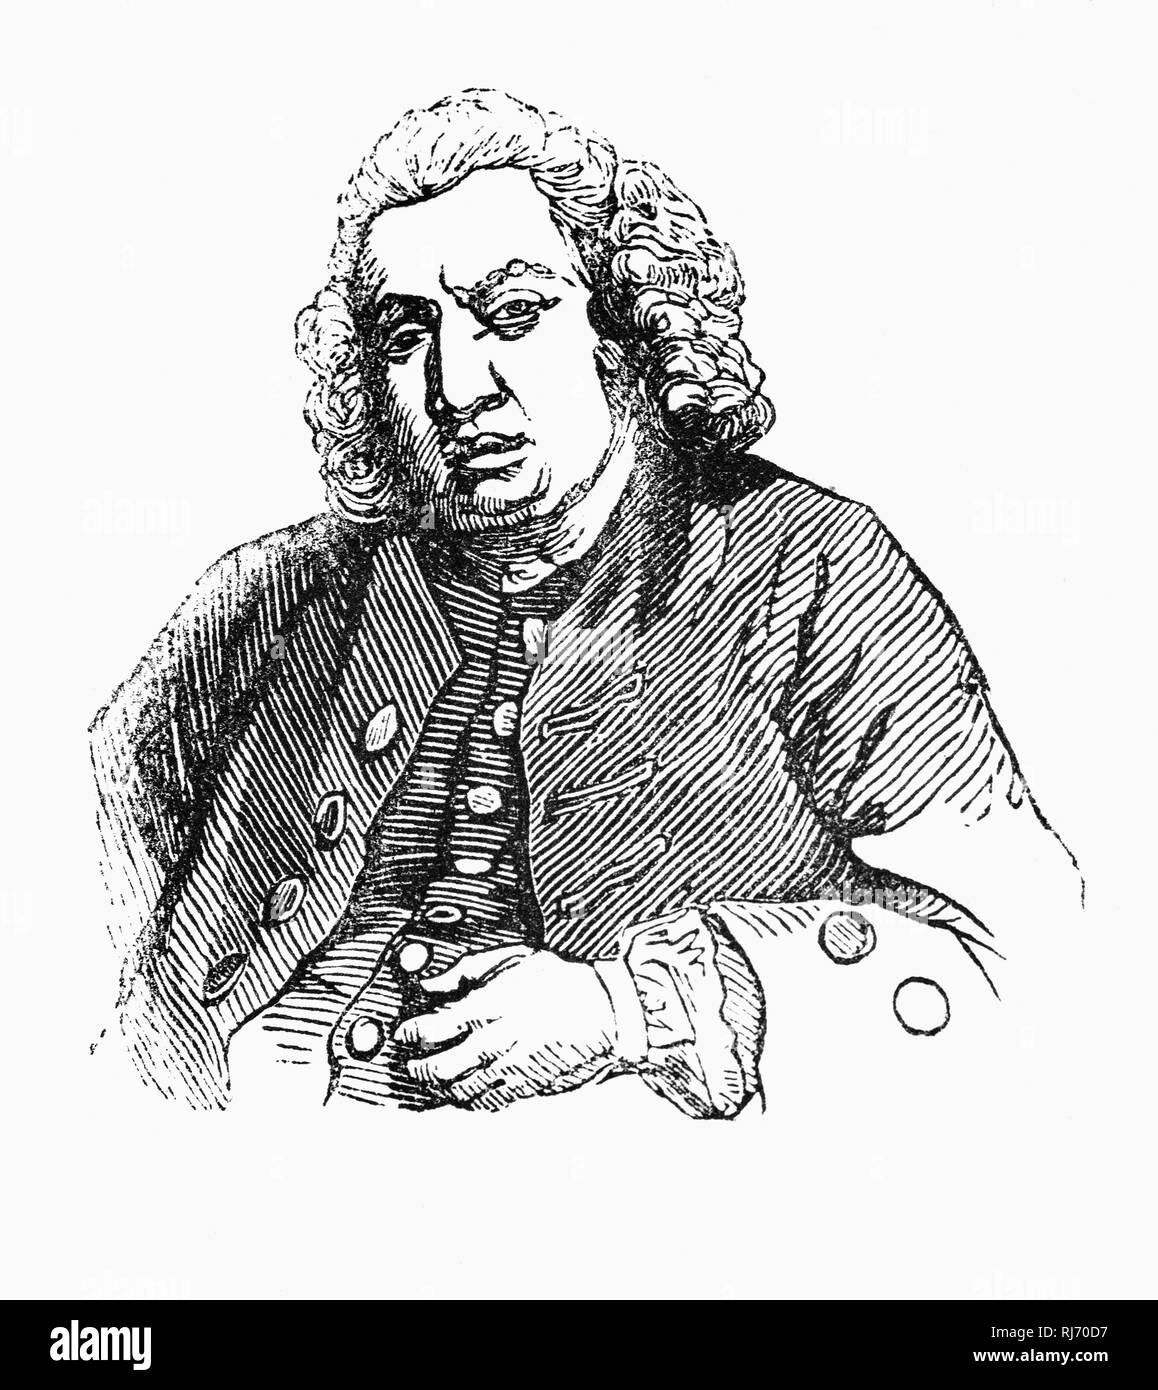 Samuel Johnson (1709-1784), a cui spesso viene fatto riferimento come il dottor Johnson, è stato uno scrittore inglese che ha fatto della durata di contributi alla letteratura inglese come un poeta, commediografo, saggista, moralista, critico letterario, biografo, editor e lessicografo. Egli era un devoto anglicana, un generoso filantropo ed un commesso Tory. Johnson era, nelle parole di Steven Lynn, "più che un noto scrittore e studioso"; egli era una celebrità per la sua attività e quando non vi era nulla da segnalare, qualcosa è stato inventato. Foto Stock